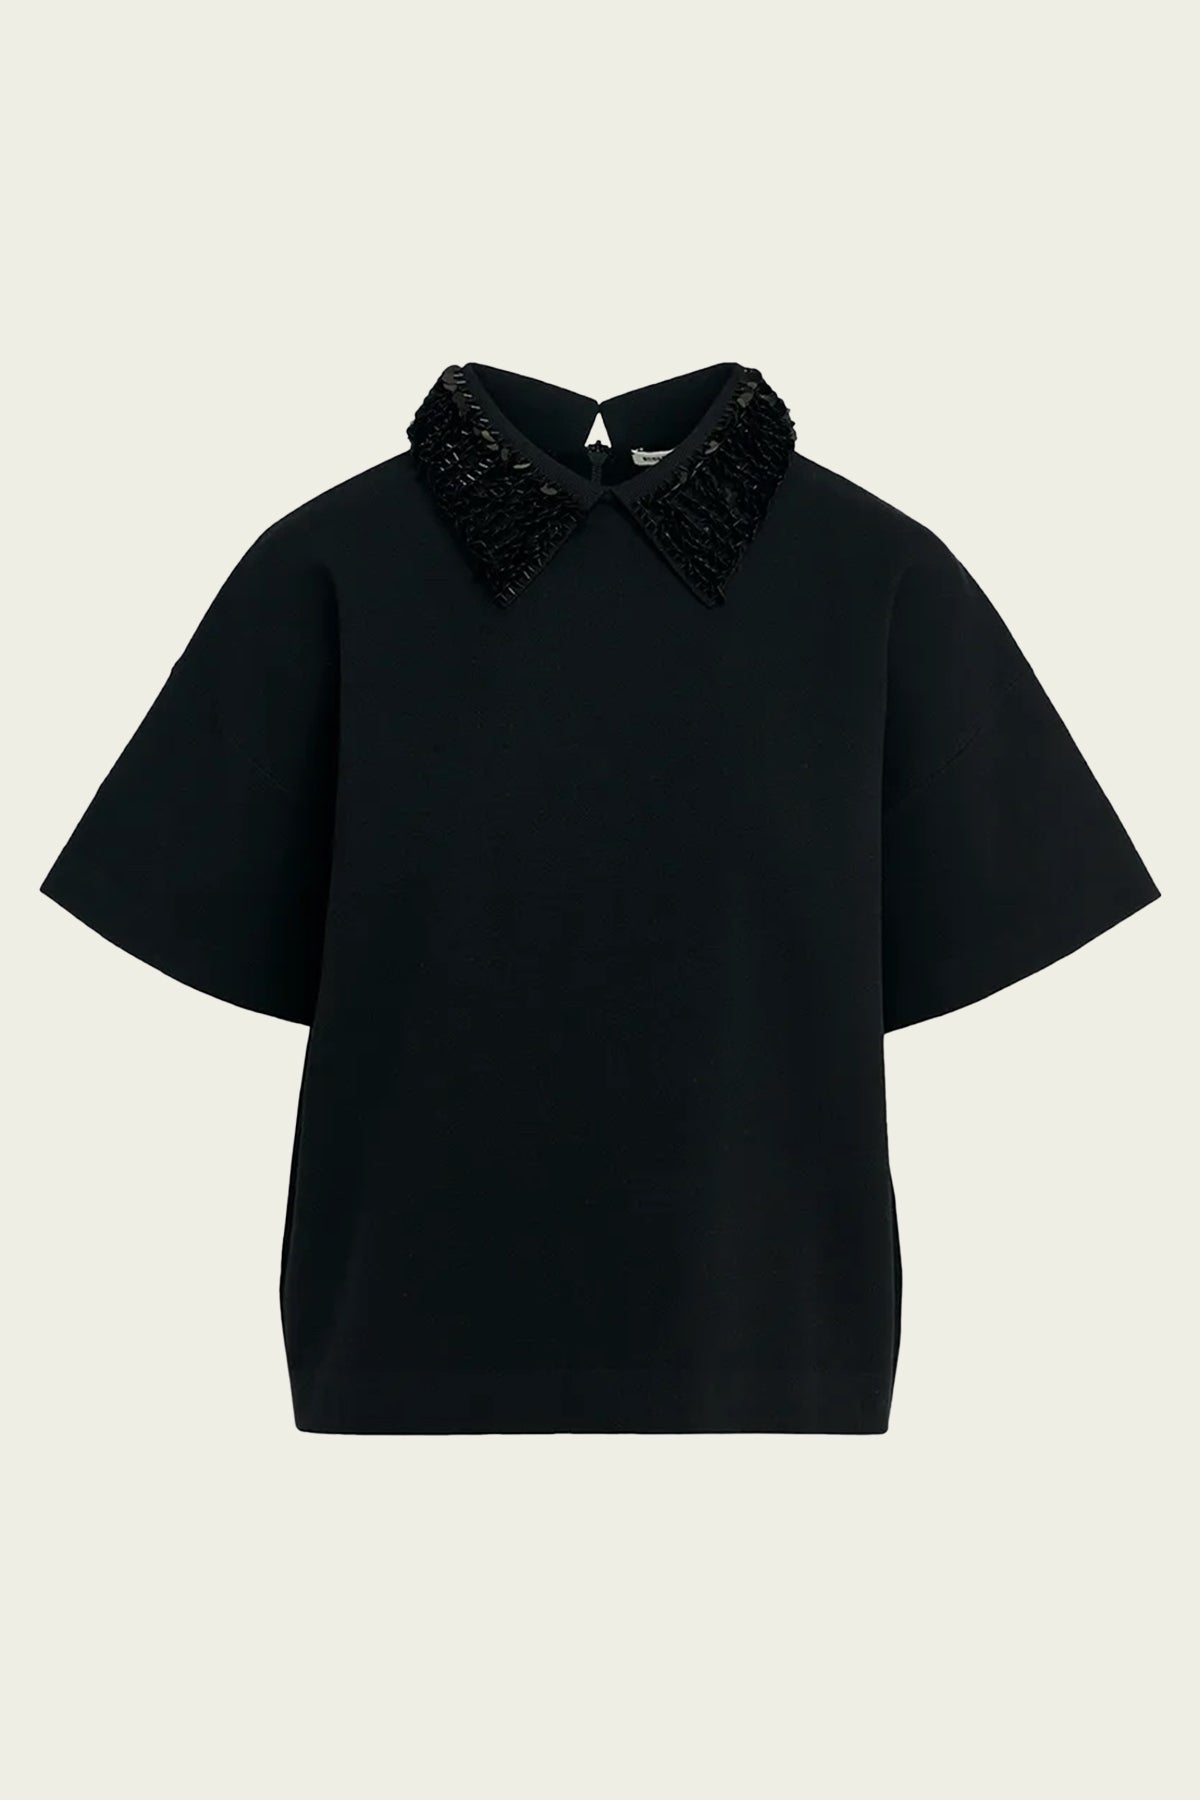 Filano Sequin - Embellished Collar in Black - shop - olivia.com